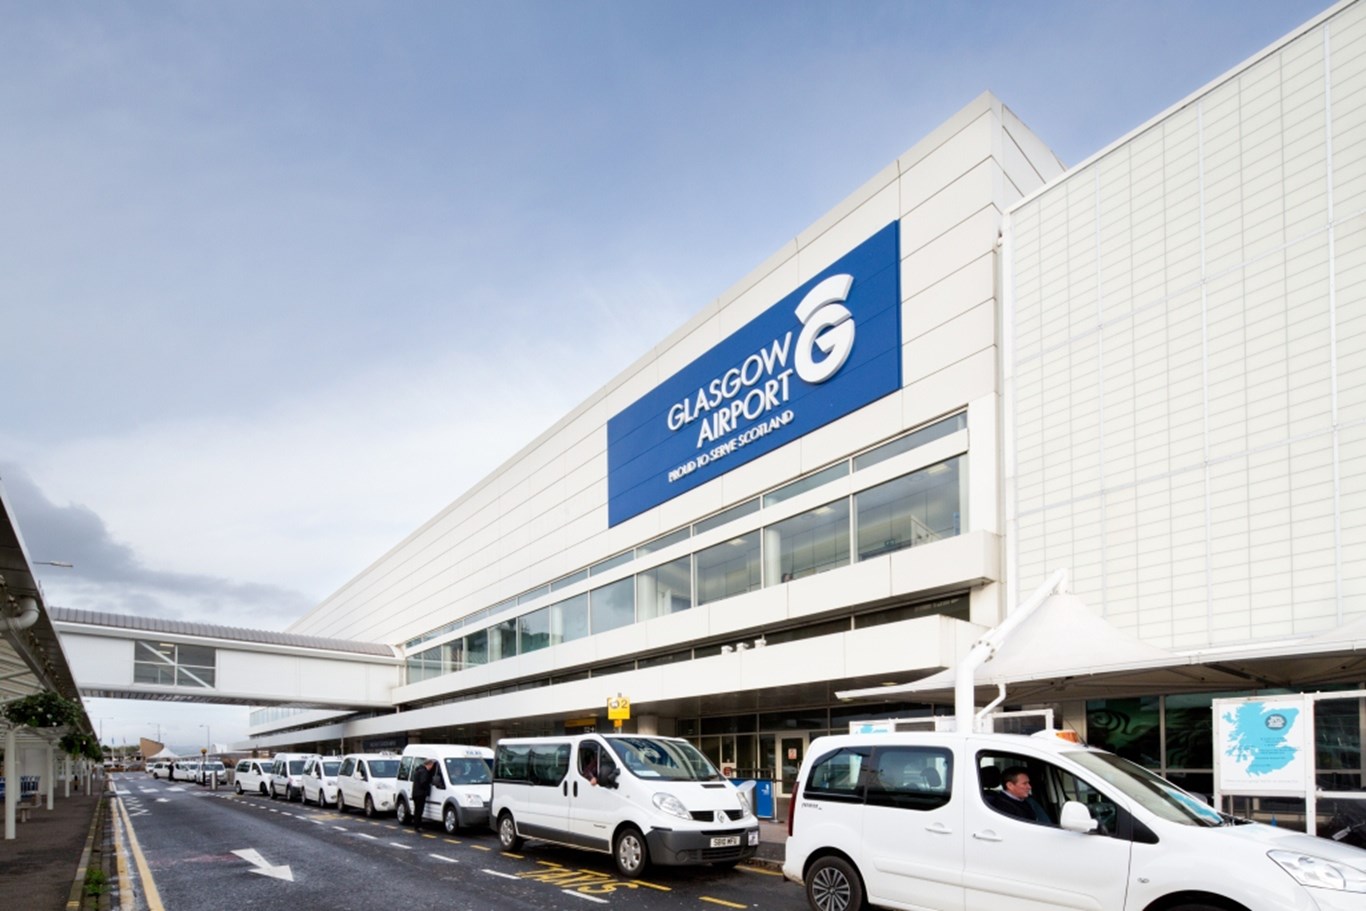 Le personnel de l'aéroport de Glasgow vote pour la grève